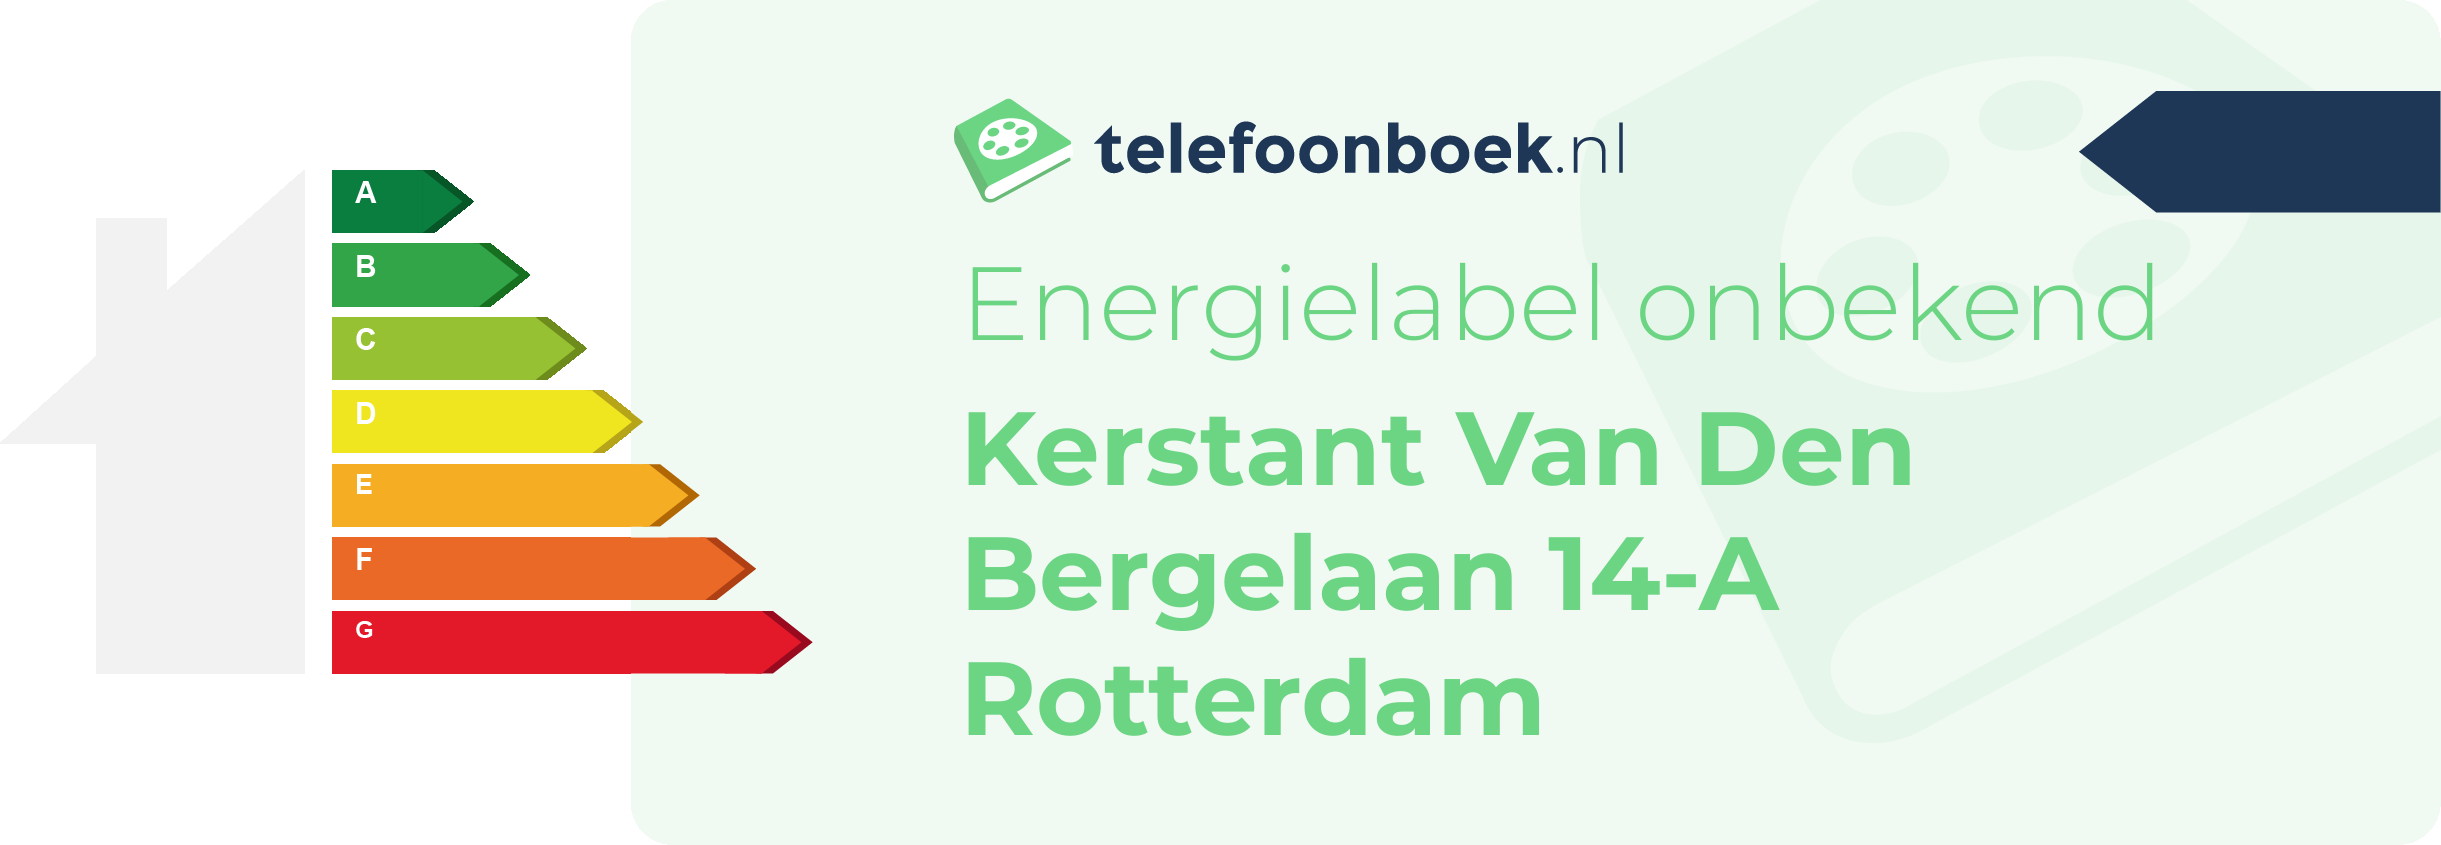 Energielabel Kerstant Van Den Bergelaan 14-A Rotterdam